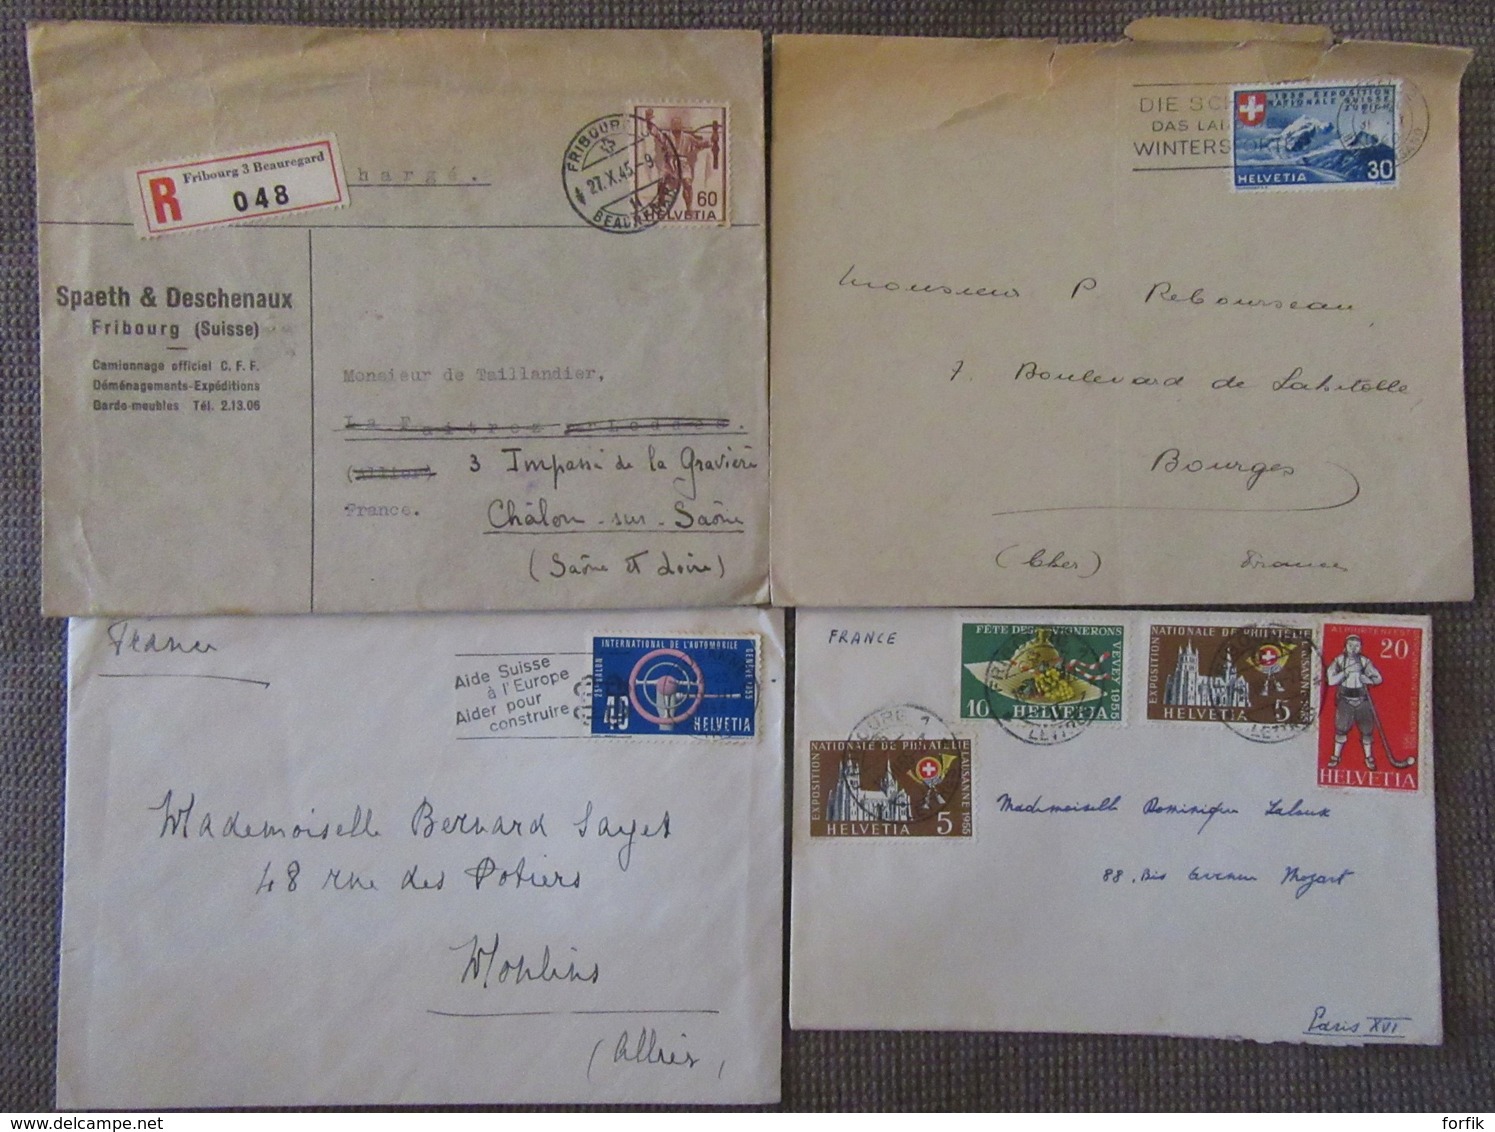 Suisse - 28 Enveloppes dont nombreux entiers postaux, EMA, timbres, etc... - 1886 à 1956 - à étudier